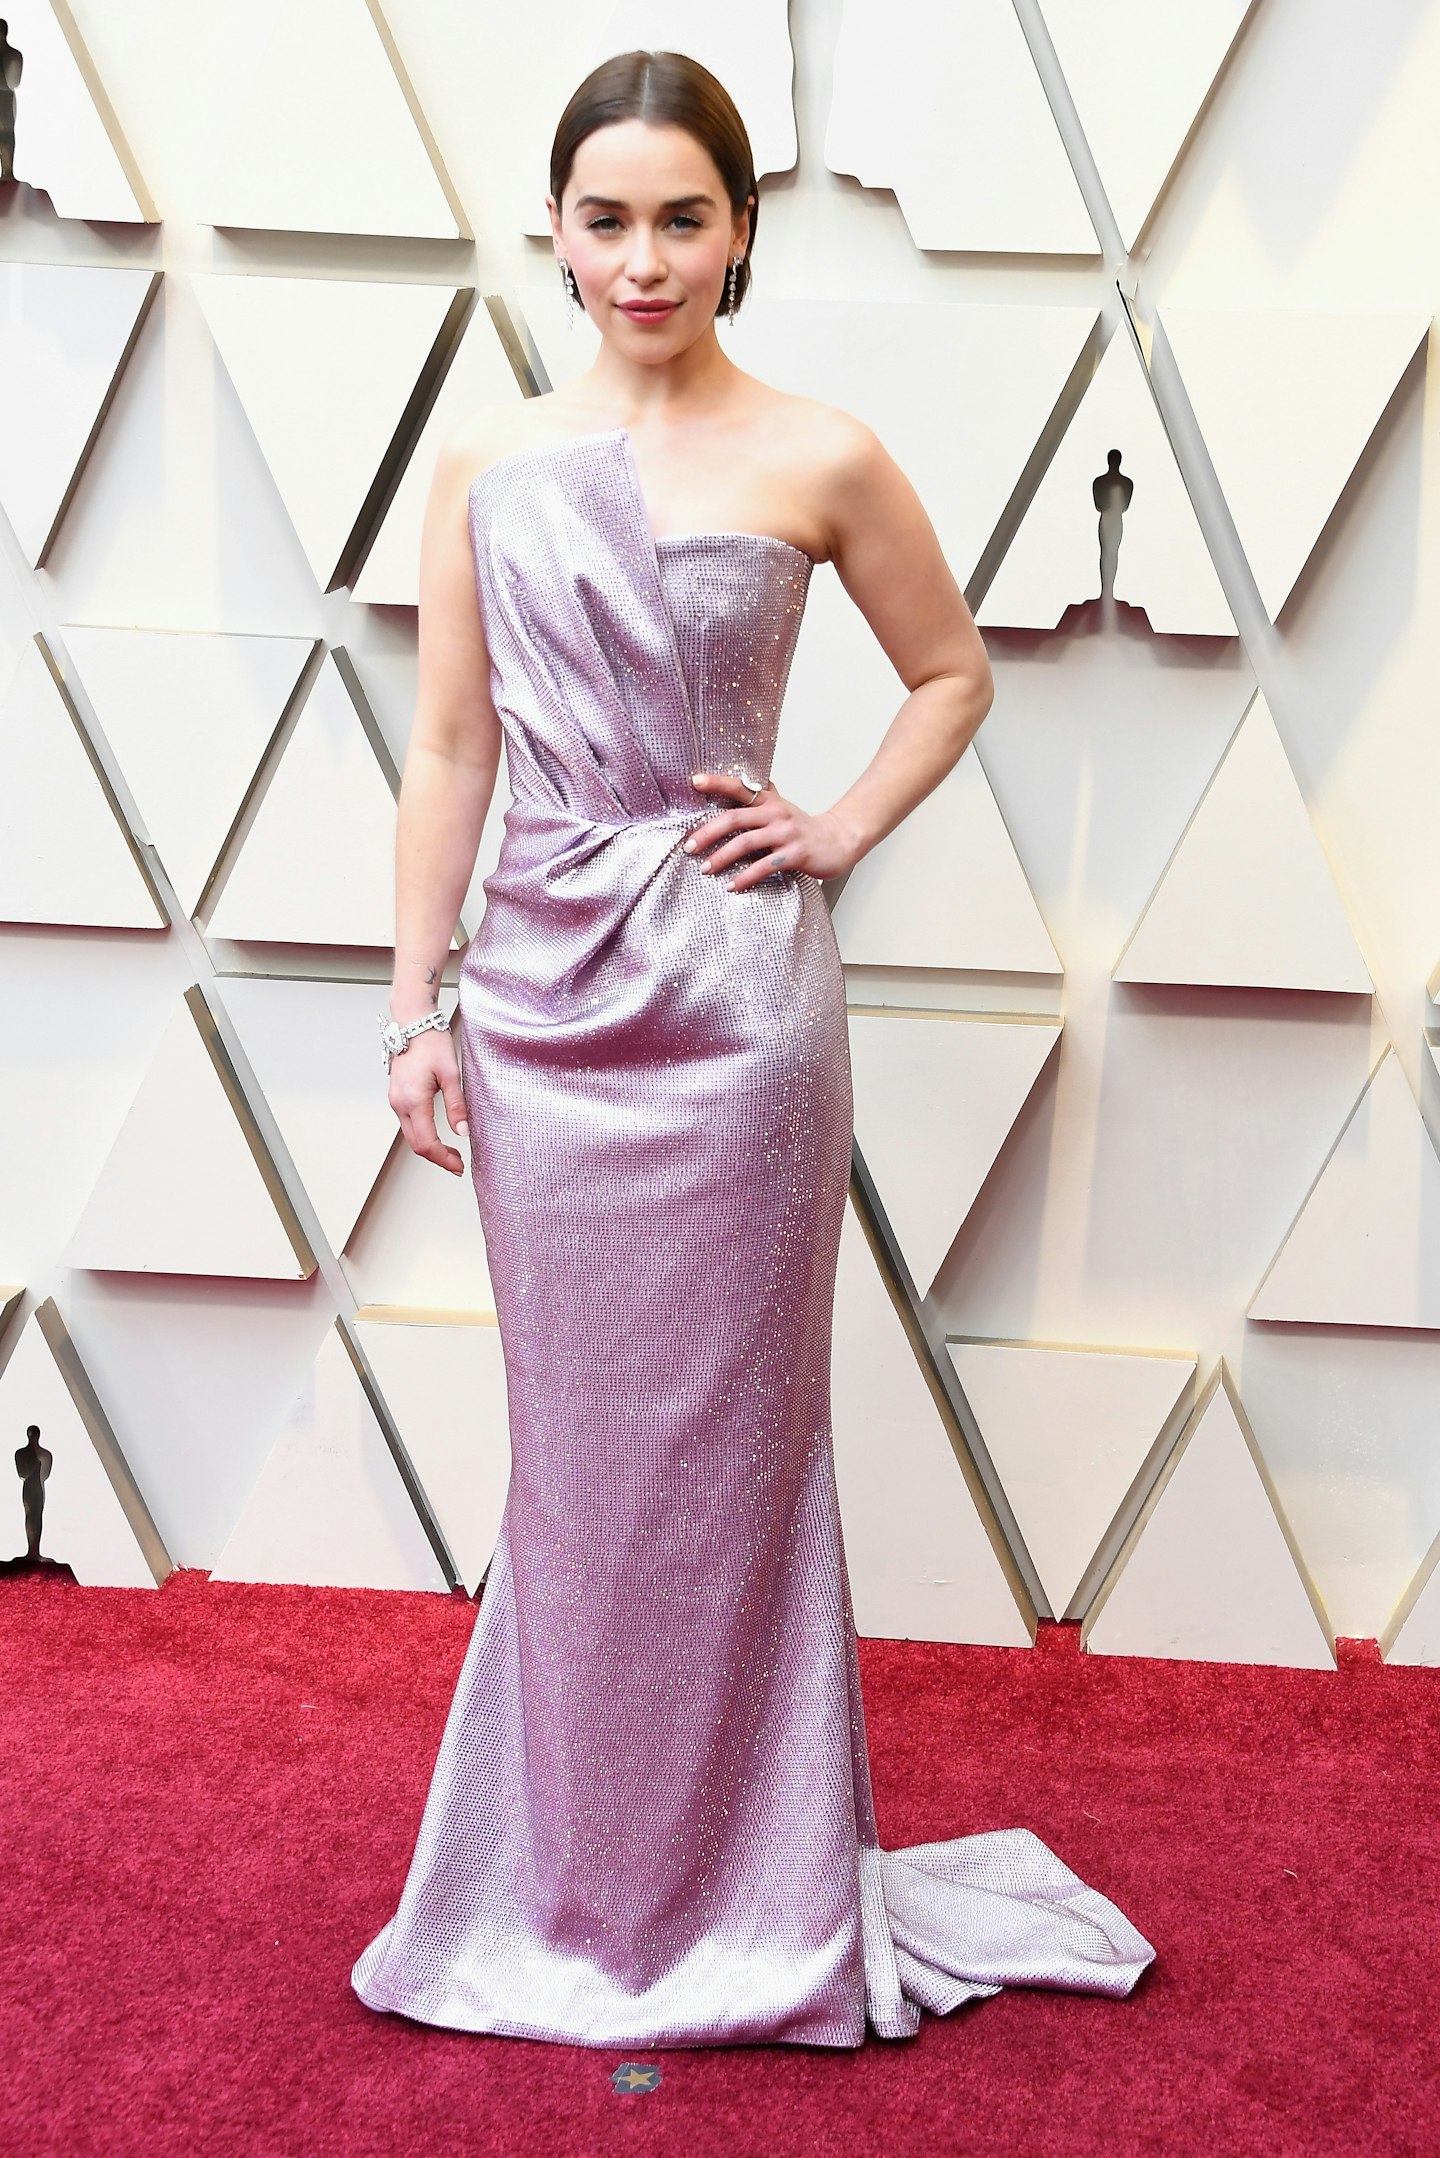 Emilia Clarke at the 2019 Oscars